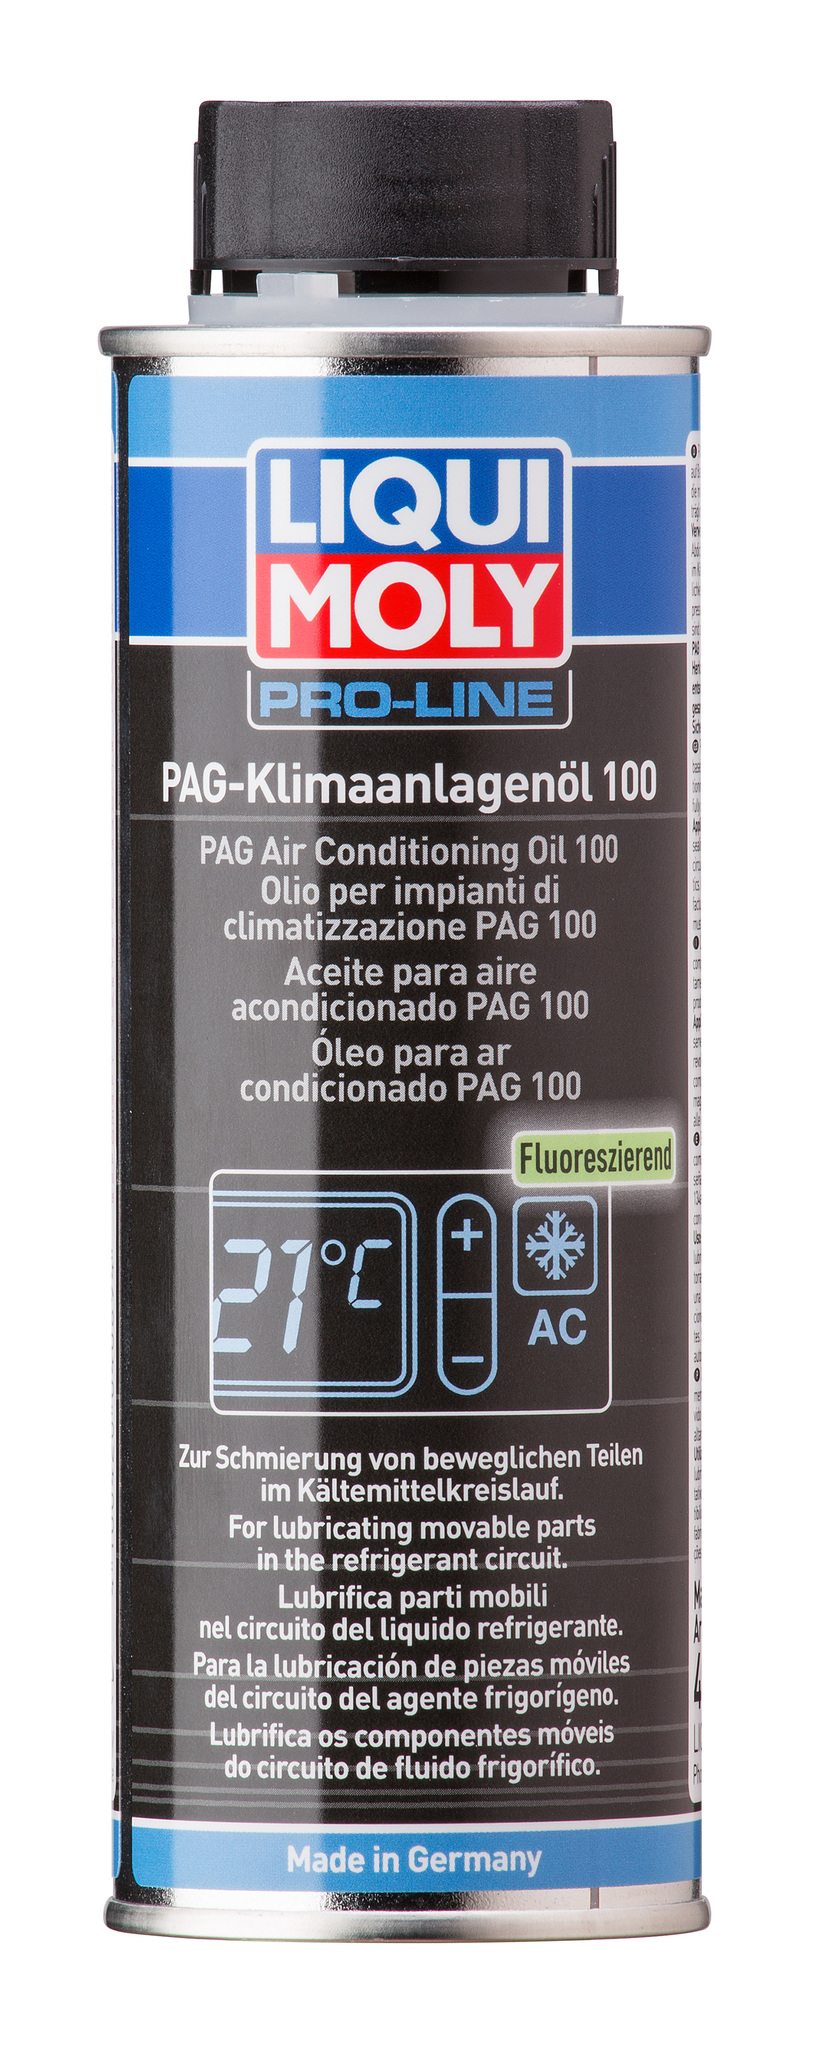 Liqui Moly PAG Klimaanlagenoil 100 Масло для кондиционеров